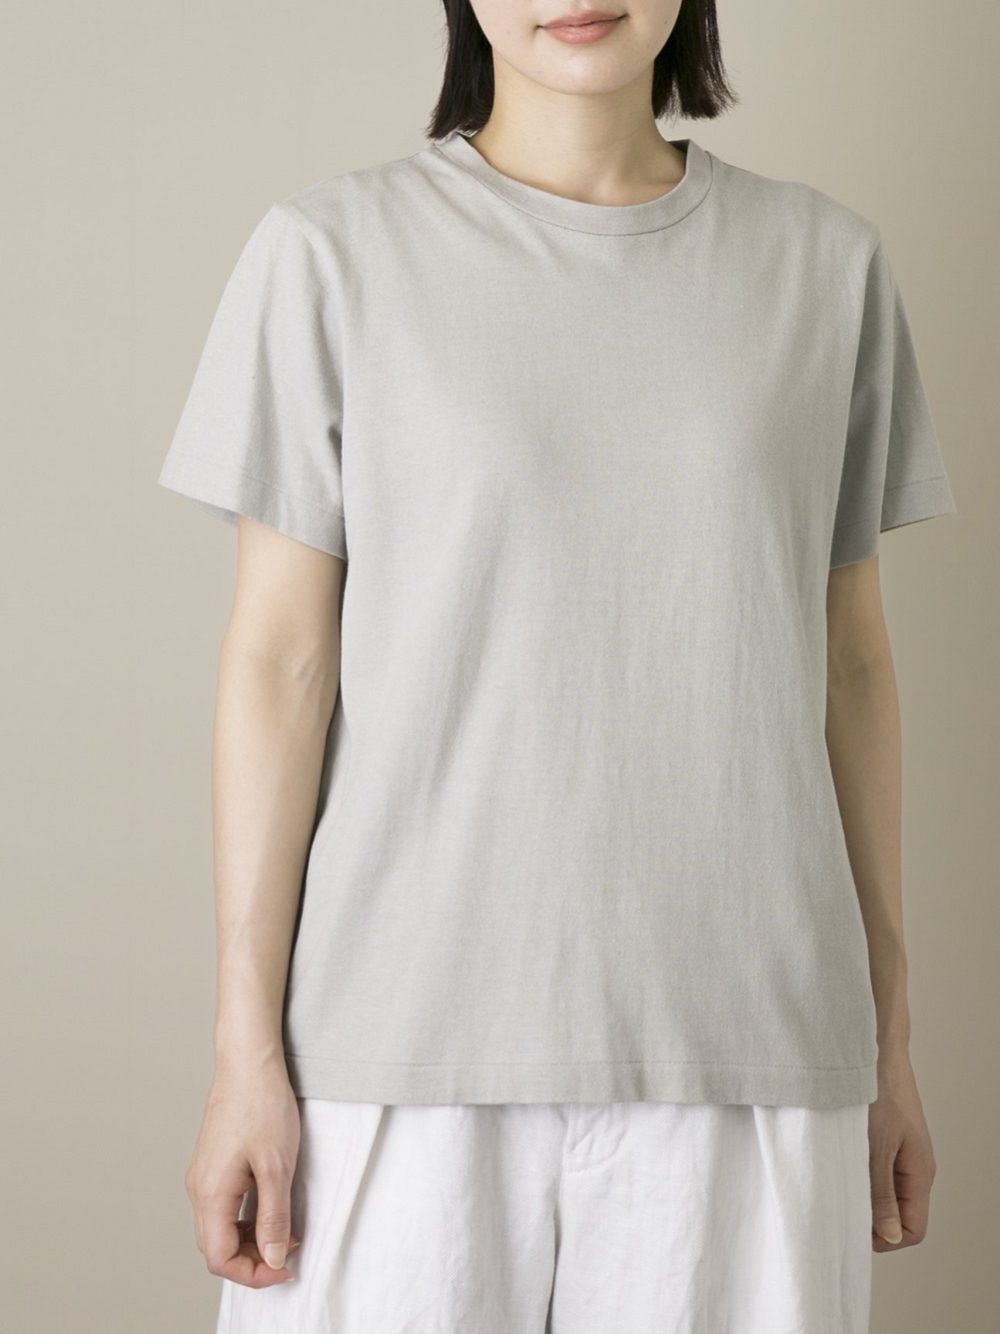 & 12 Linen（天竺）半袖Tシャツ | ITEM | Vlas blomme 